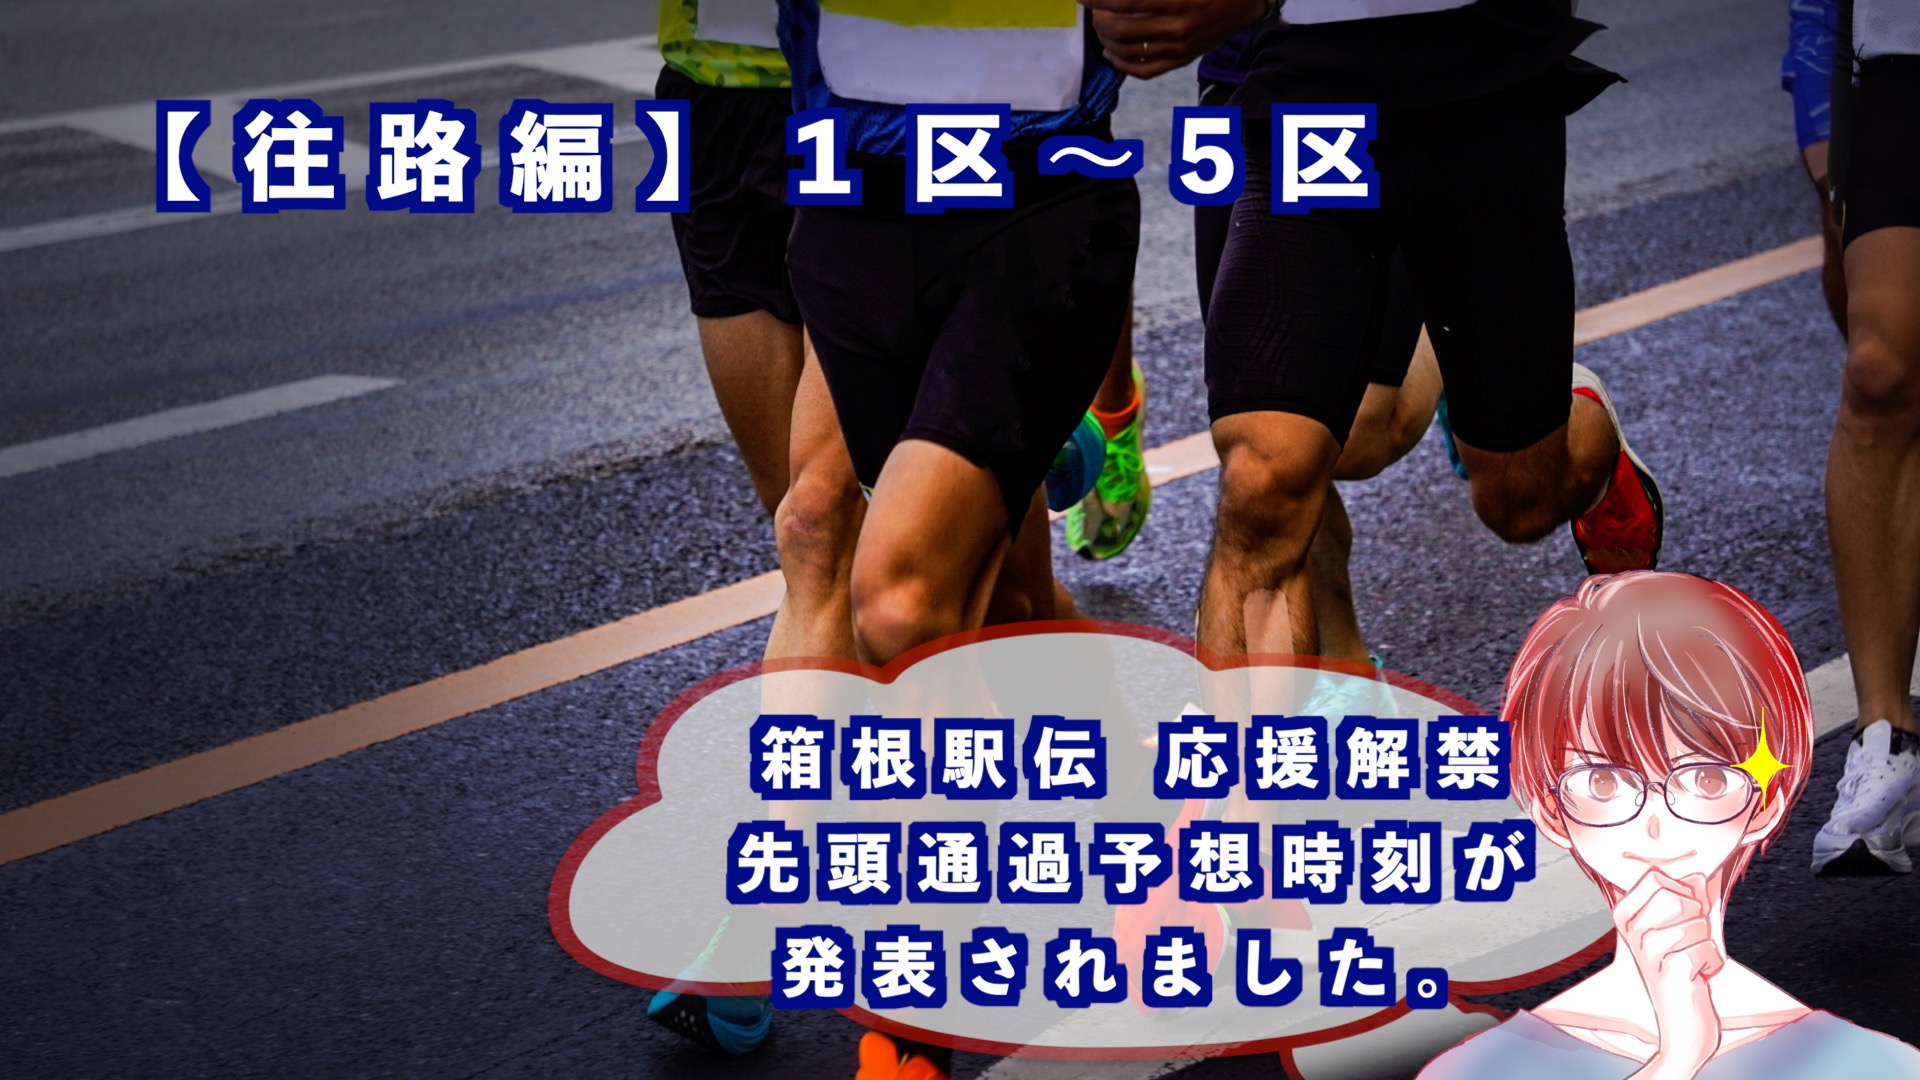 「箱根駅伝」の往路のアイキャッチ画像